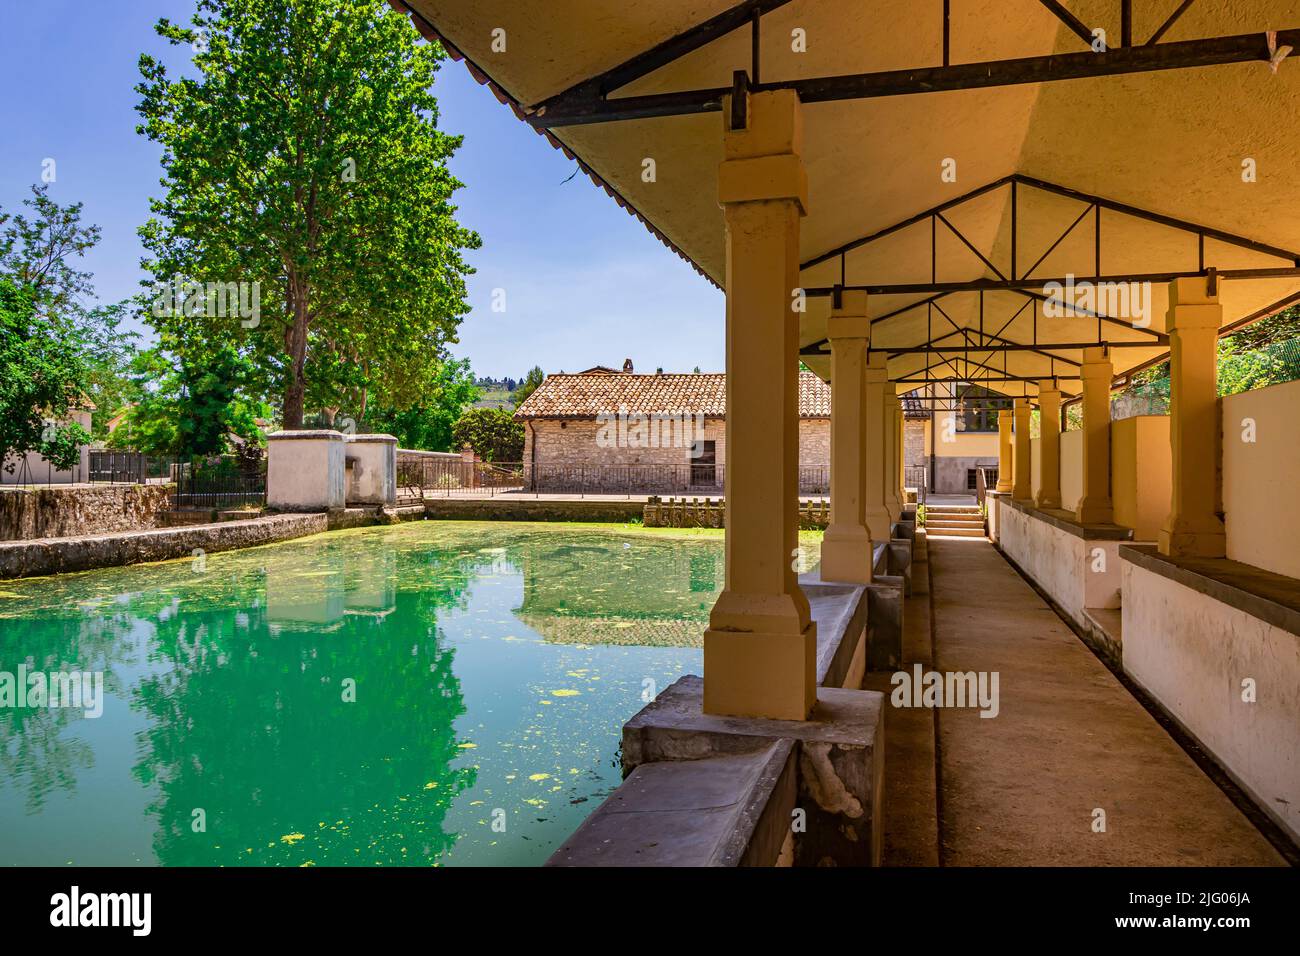 Das alte Waschhaus, am Fluss, im mittelalterlichen Dorf Bevagna. Umbrien, Italien, Perugia. Der blaue Himmel, Bäume und Vegetation. Grünalgen auf t Stockfoto